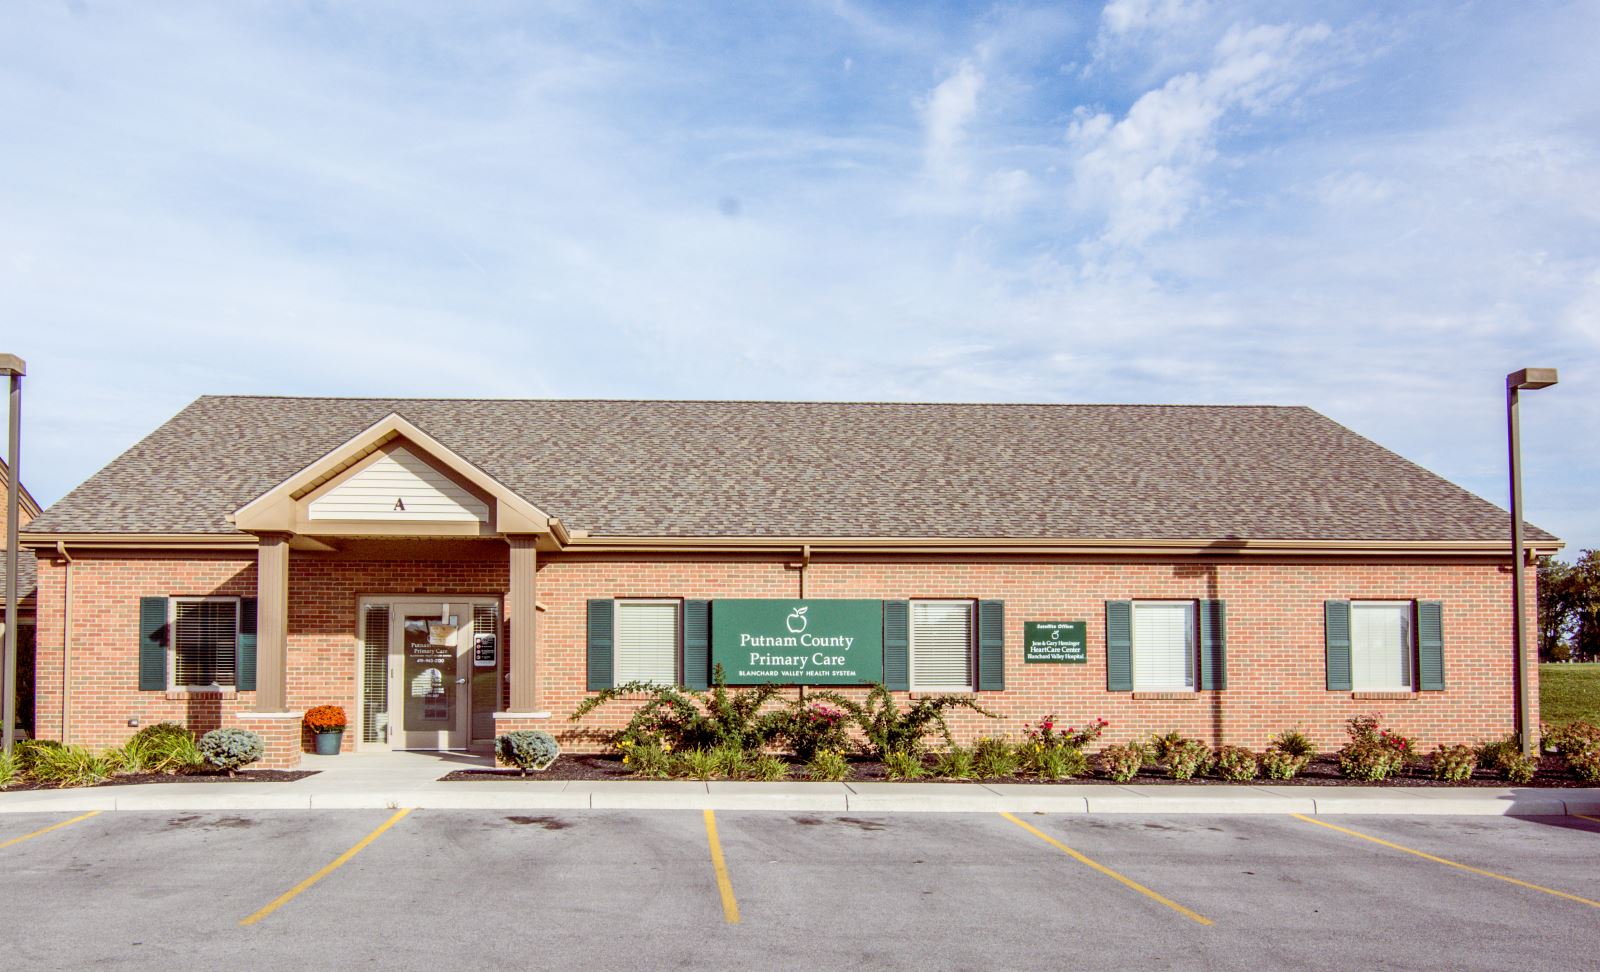 Putnam County Primary Care - Leipsic Leipsic (419)943-2130